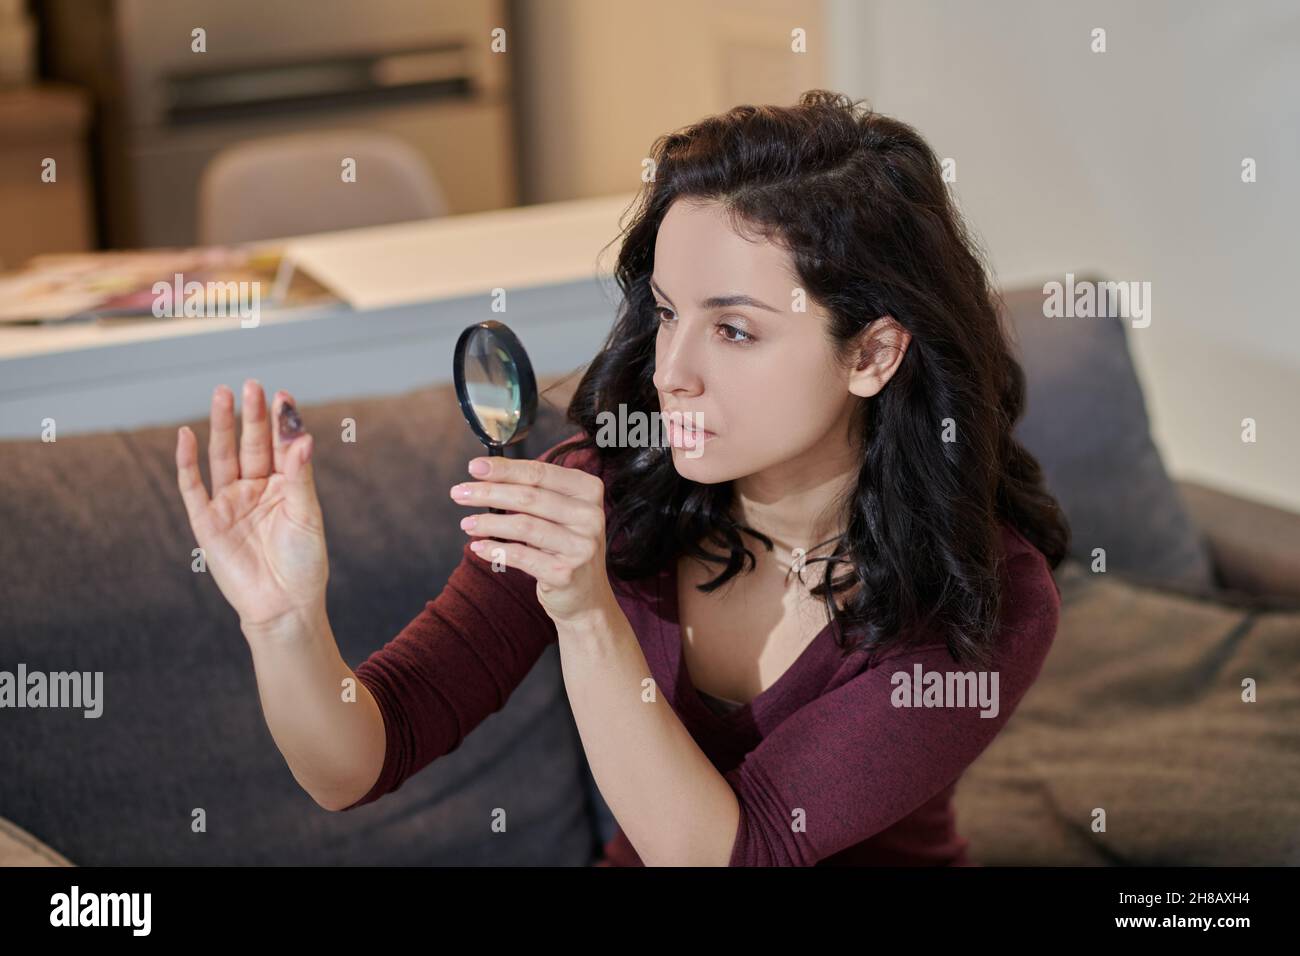 Messa a fuoco attraente femmina esaminando un cristallo attraverso una lente di ingrandimento Foto Stock